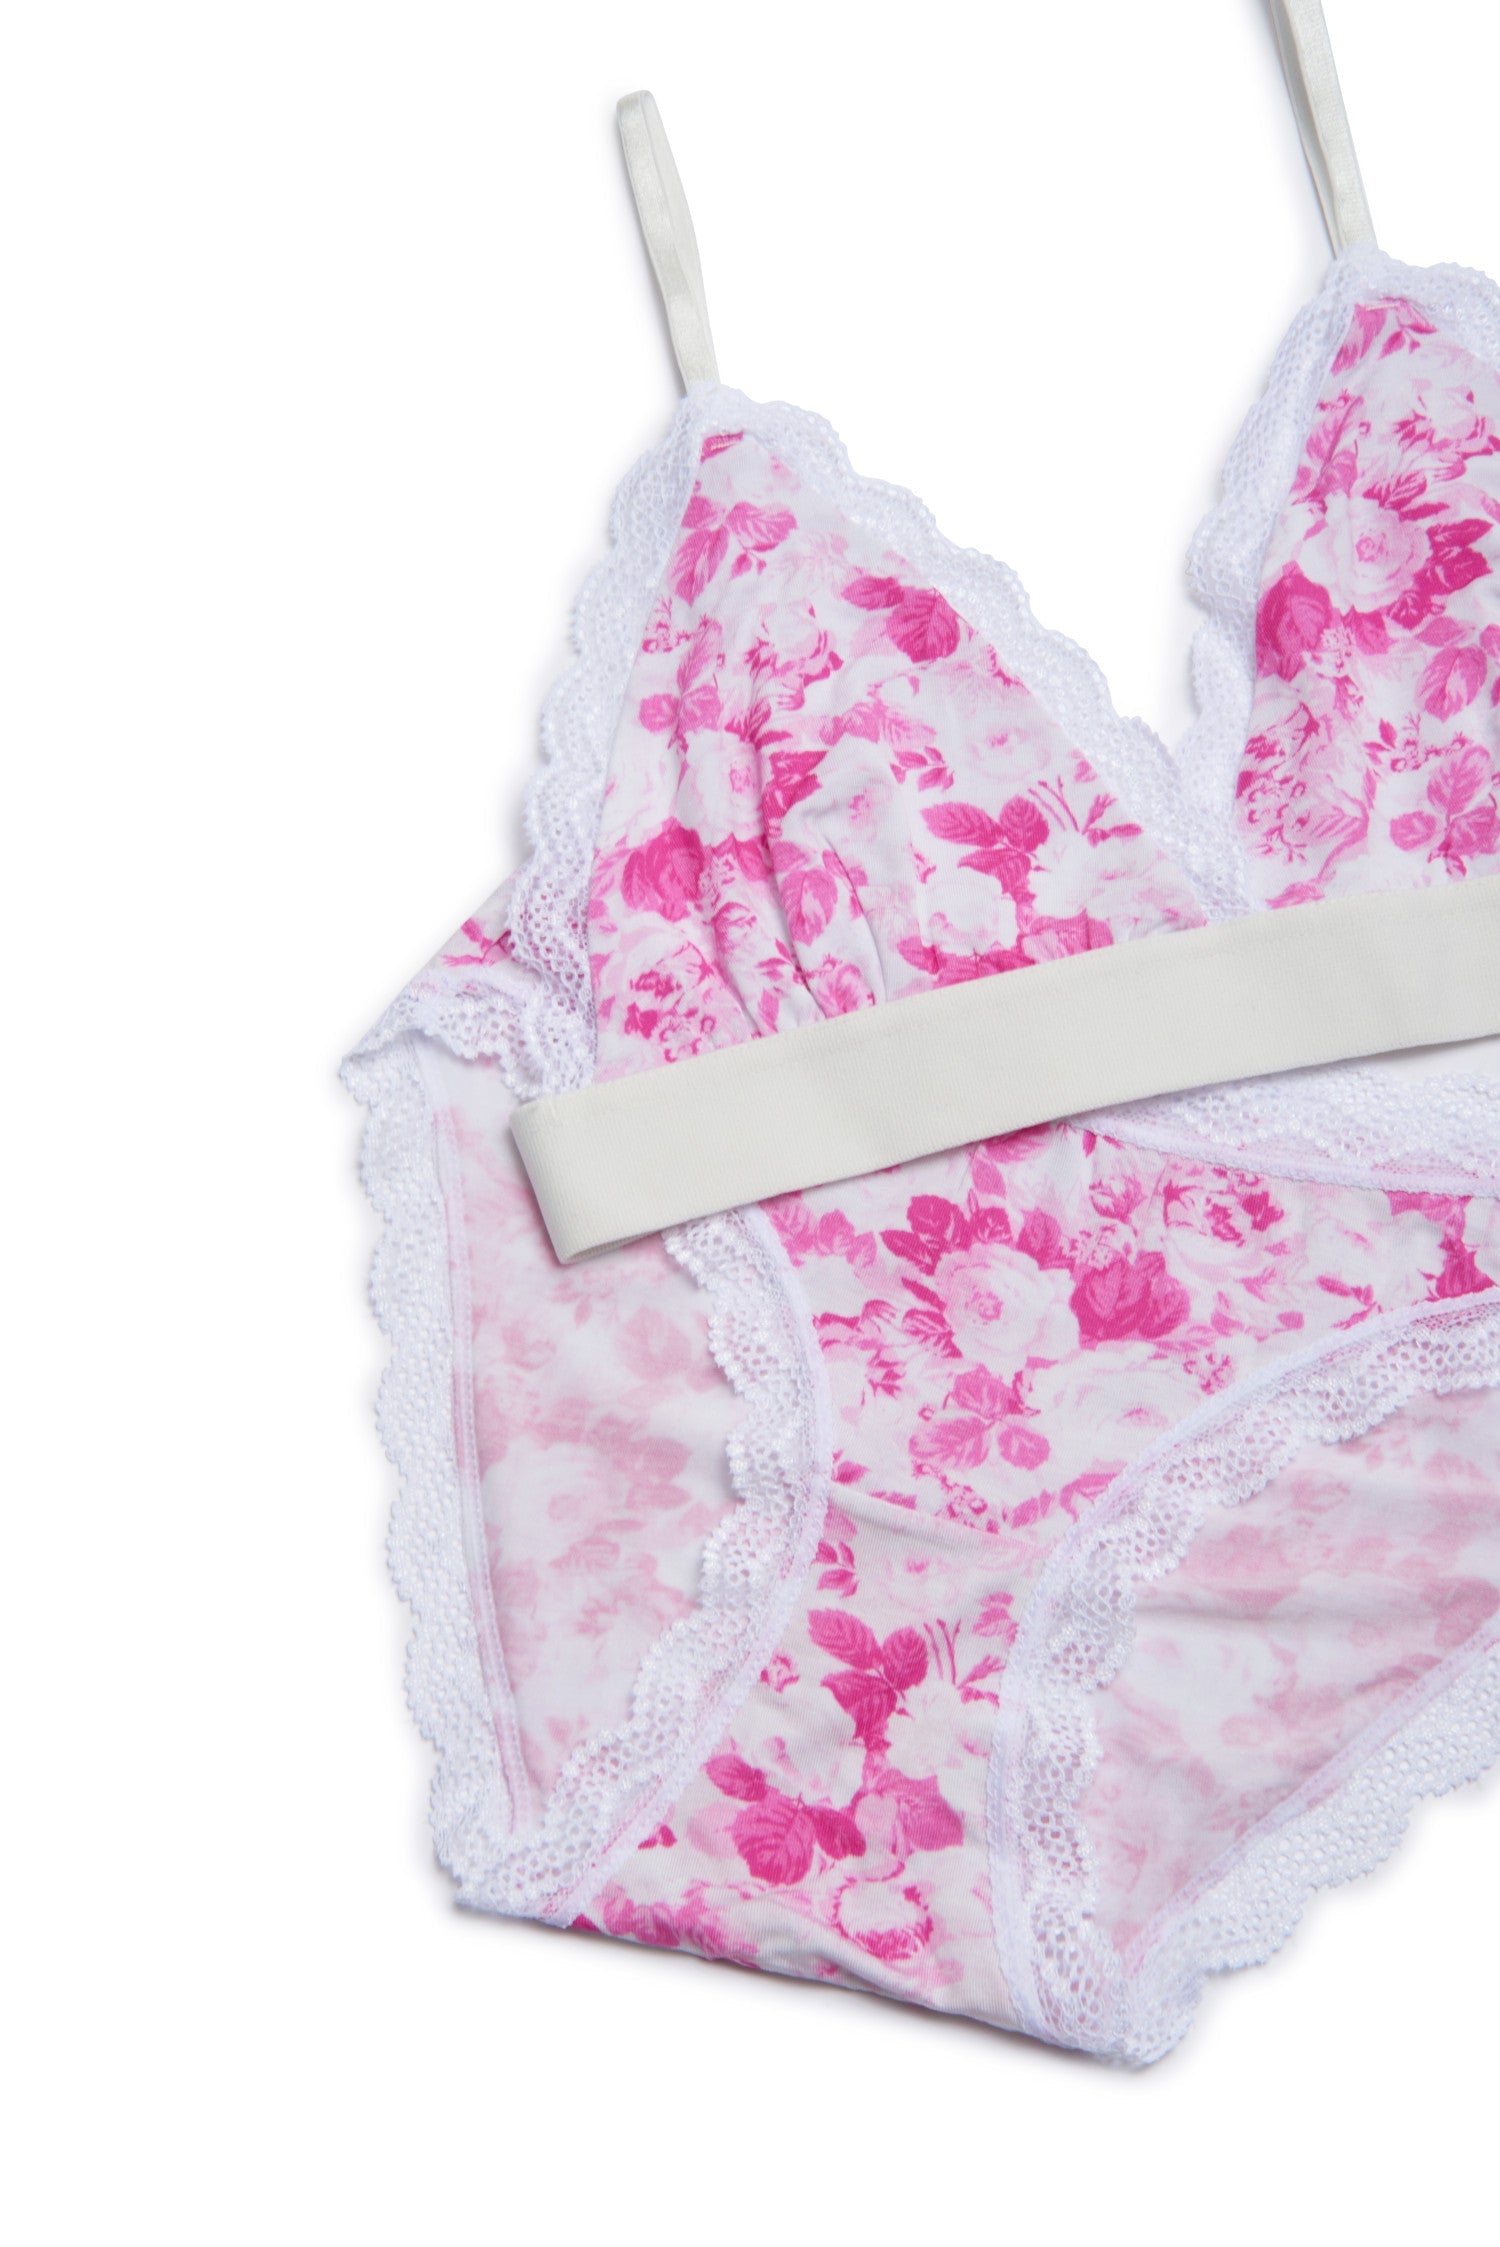 Wholesale 2PCS Romantic Rose Transparent Bra Panty Cutout Lace